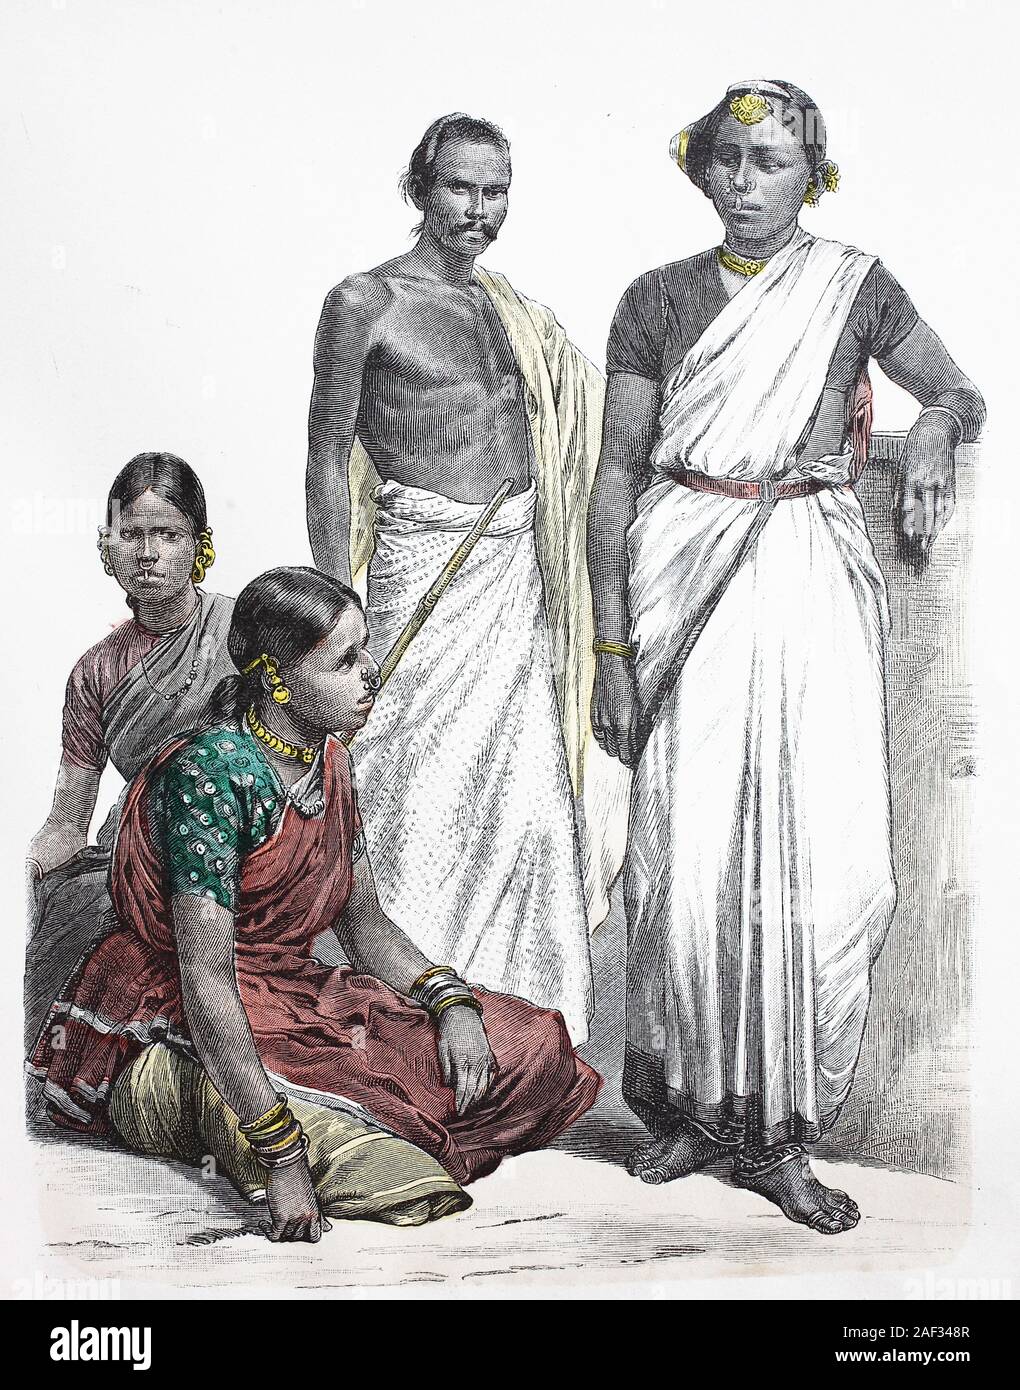 Nationale Kostüm, Kleidung, Geschichte der Kostüme, klingende Hindus, Asiaten, Ostindien, 1885, Volkstracht, Kleidung, der Kostüme, Kling Hindus, Asiaten, 1885 Stockfoto